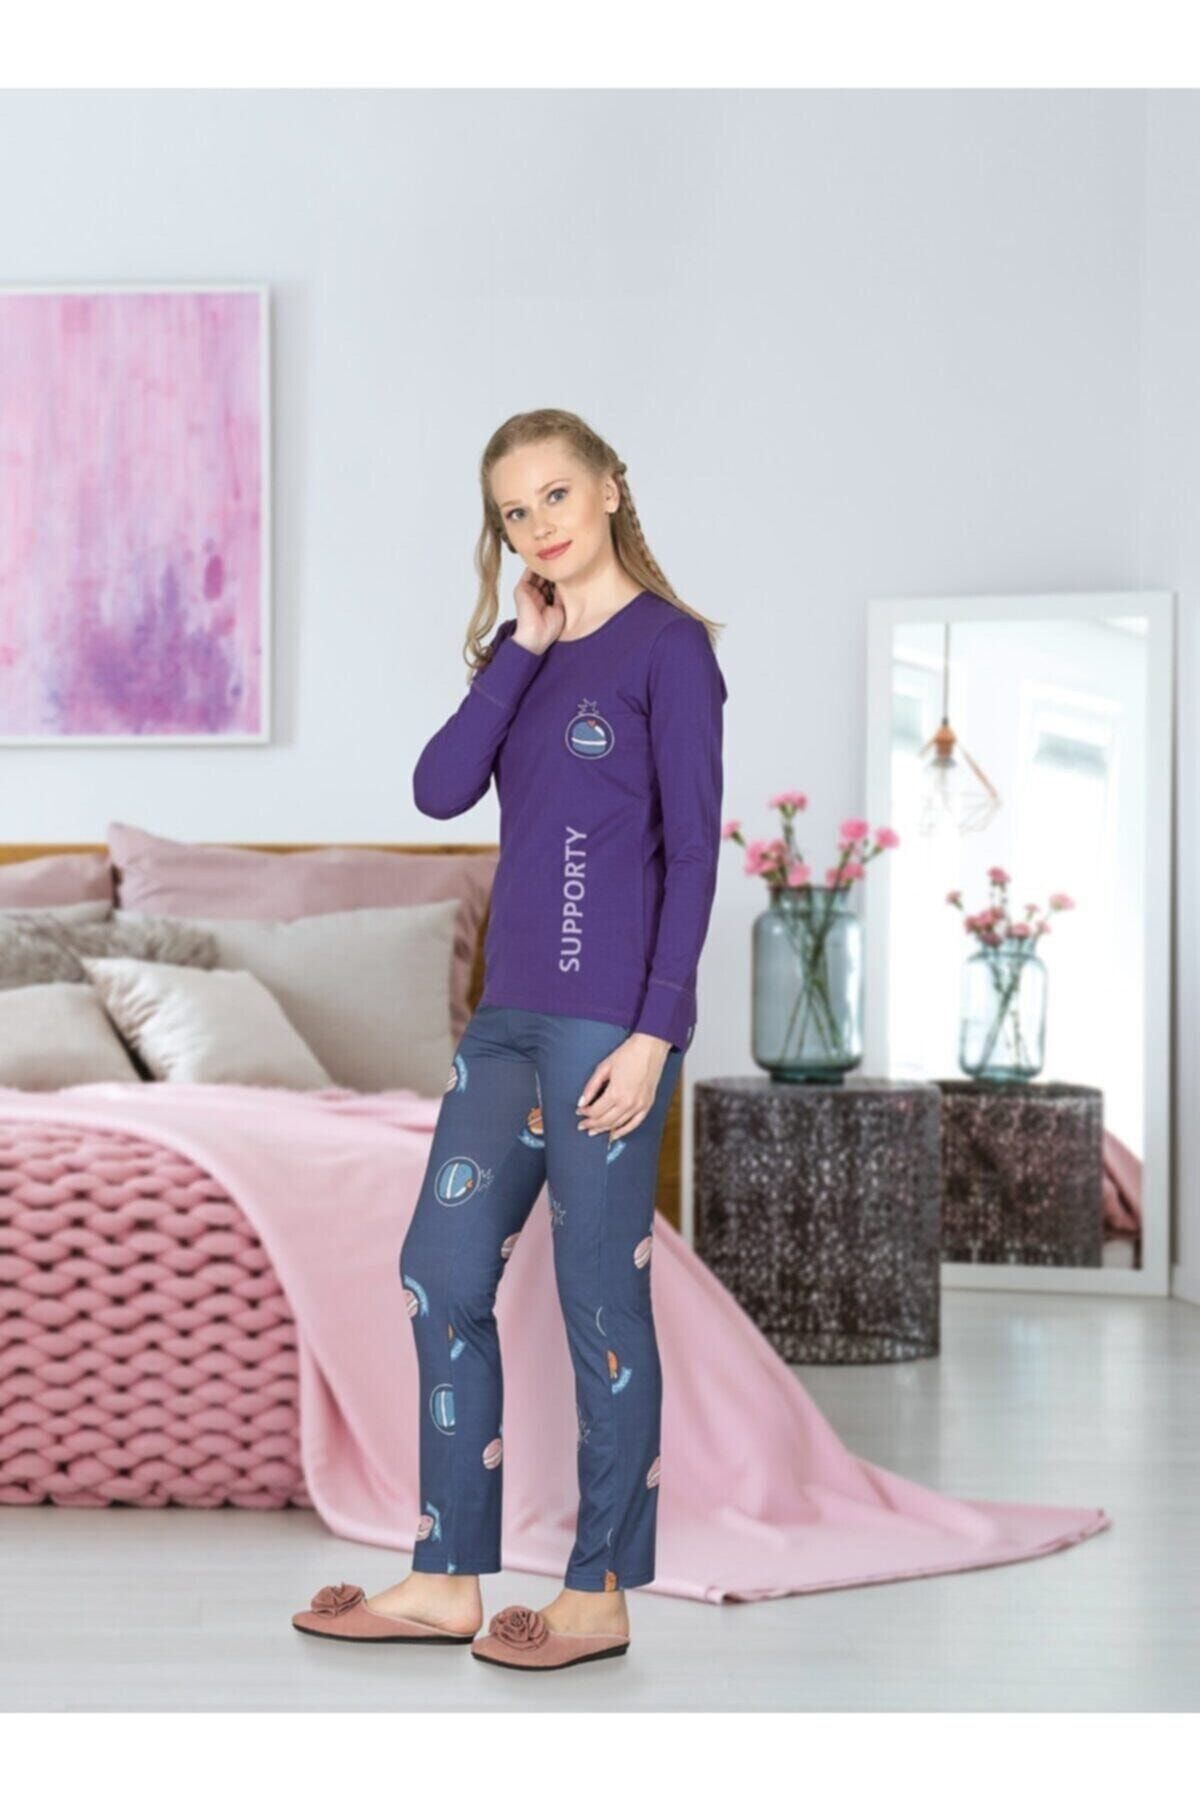 Jiber 3676 Kadın Modal Pijama Takımı - Mor